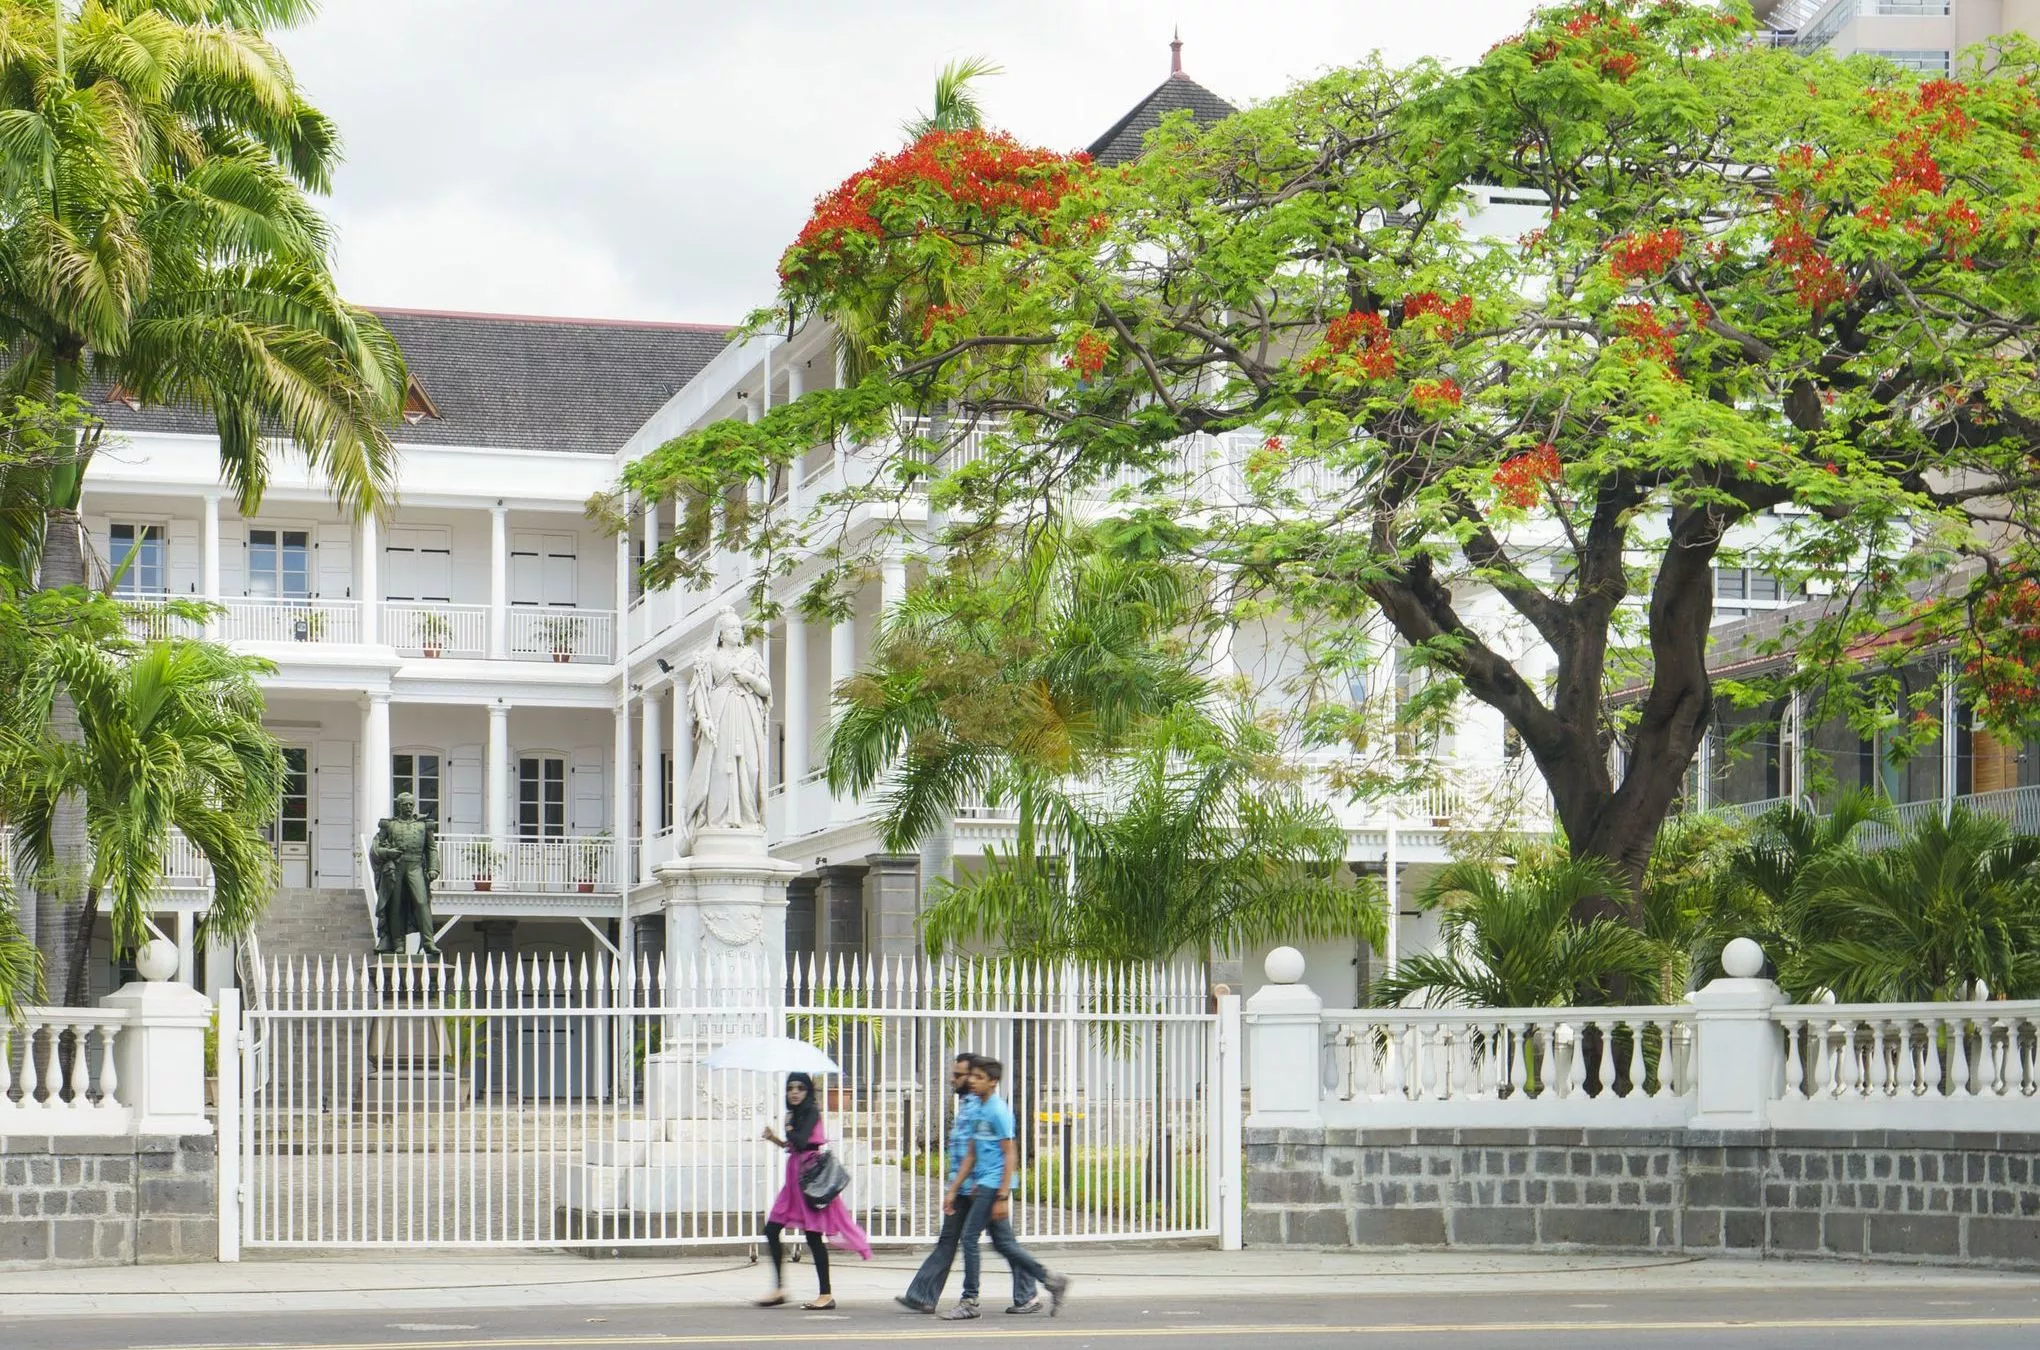 Architektonische Spuren aus der Kolonialzeit: Der 1738 von den Franzosen errichtete Regierungssitz in Port Louis